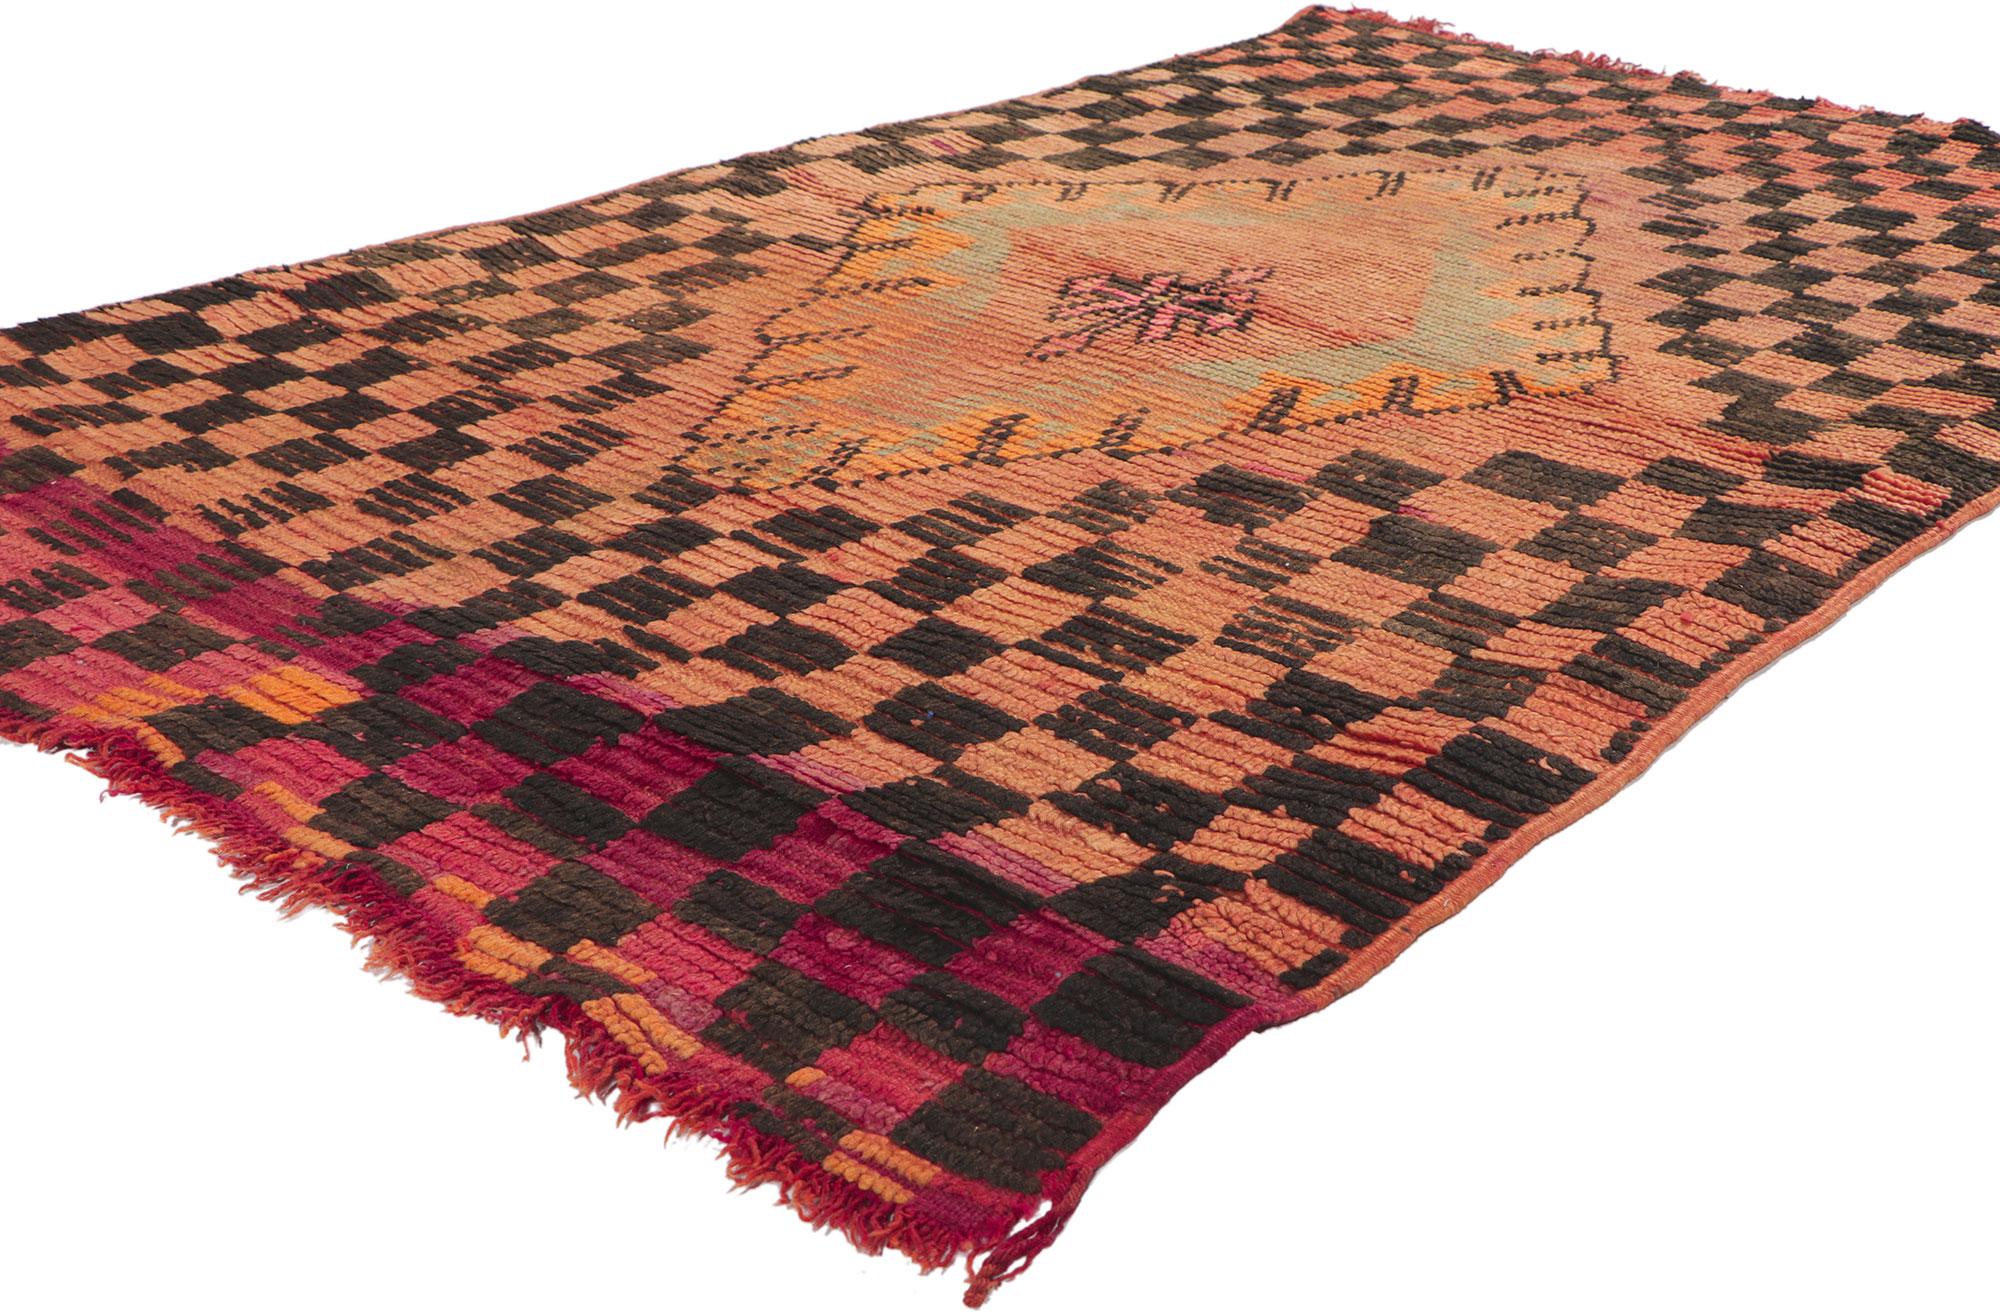 78406 Tapis marocain Vintage Orange Boujad, 03'08 x 06'00. Les tapis Boujad, originaires de la région de Boujad dans le Moyen Atlas, sont des chefs-d'œuvre marocains traditionnels tissés à la main par des artisans berbères indigènes. Reverts pour